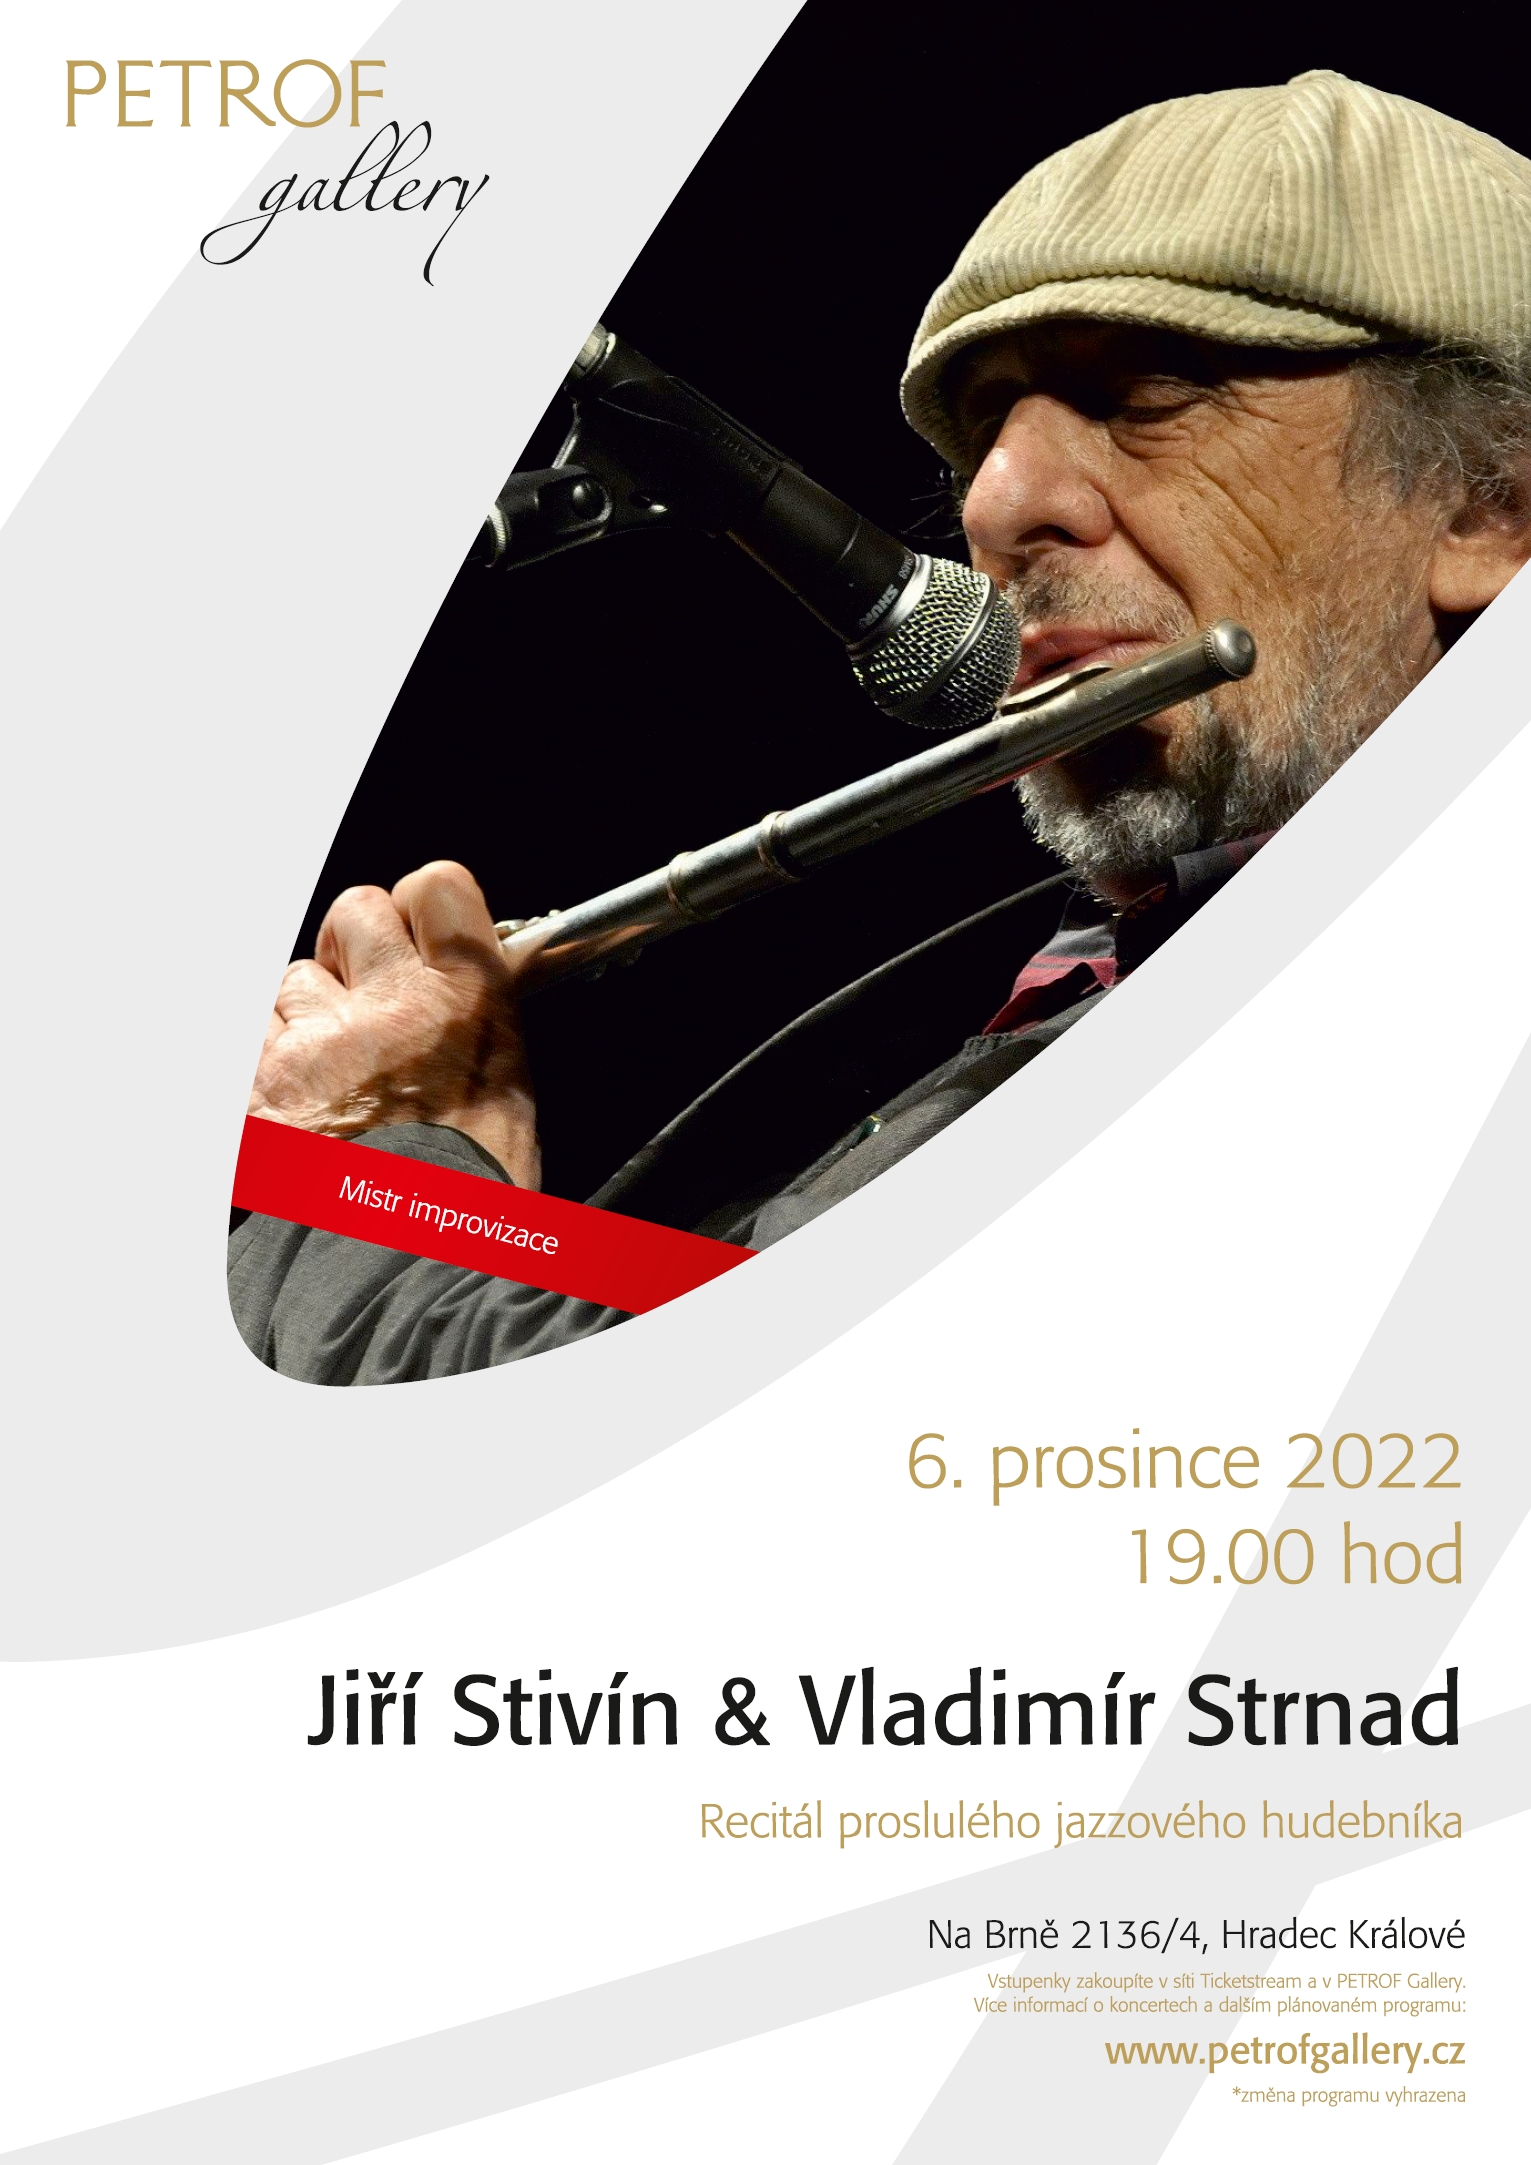 Jiří Stivín & Vladimír Strnad